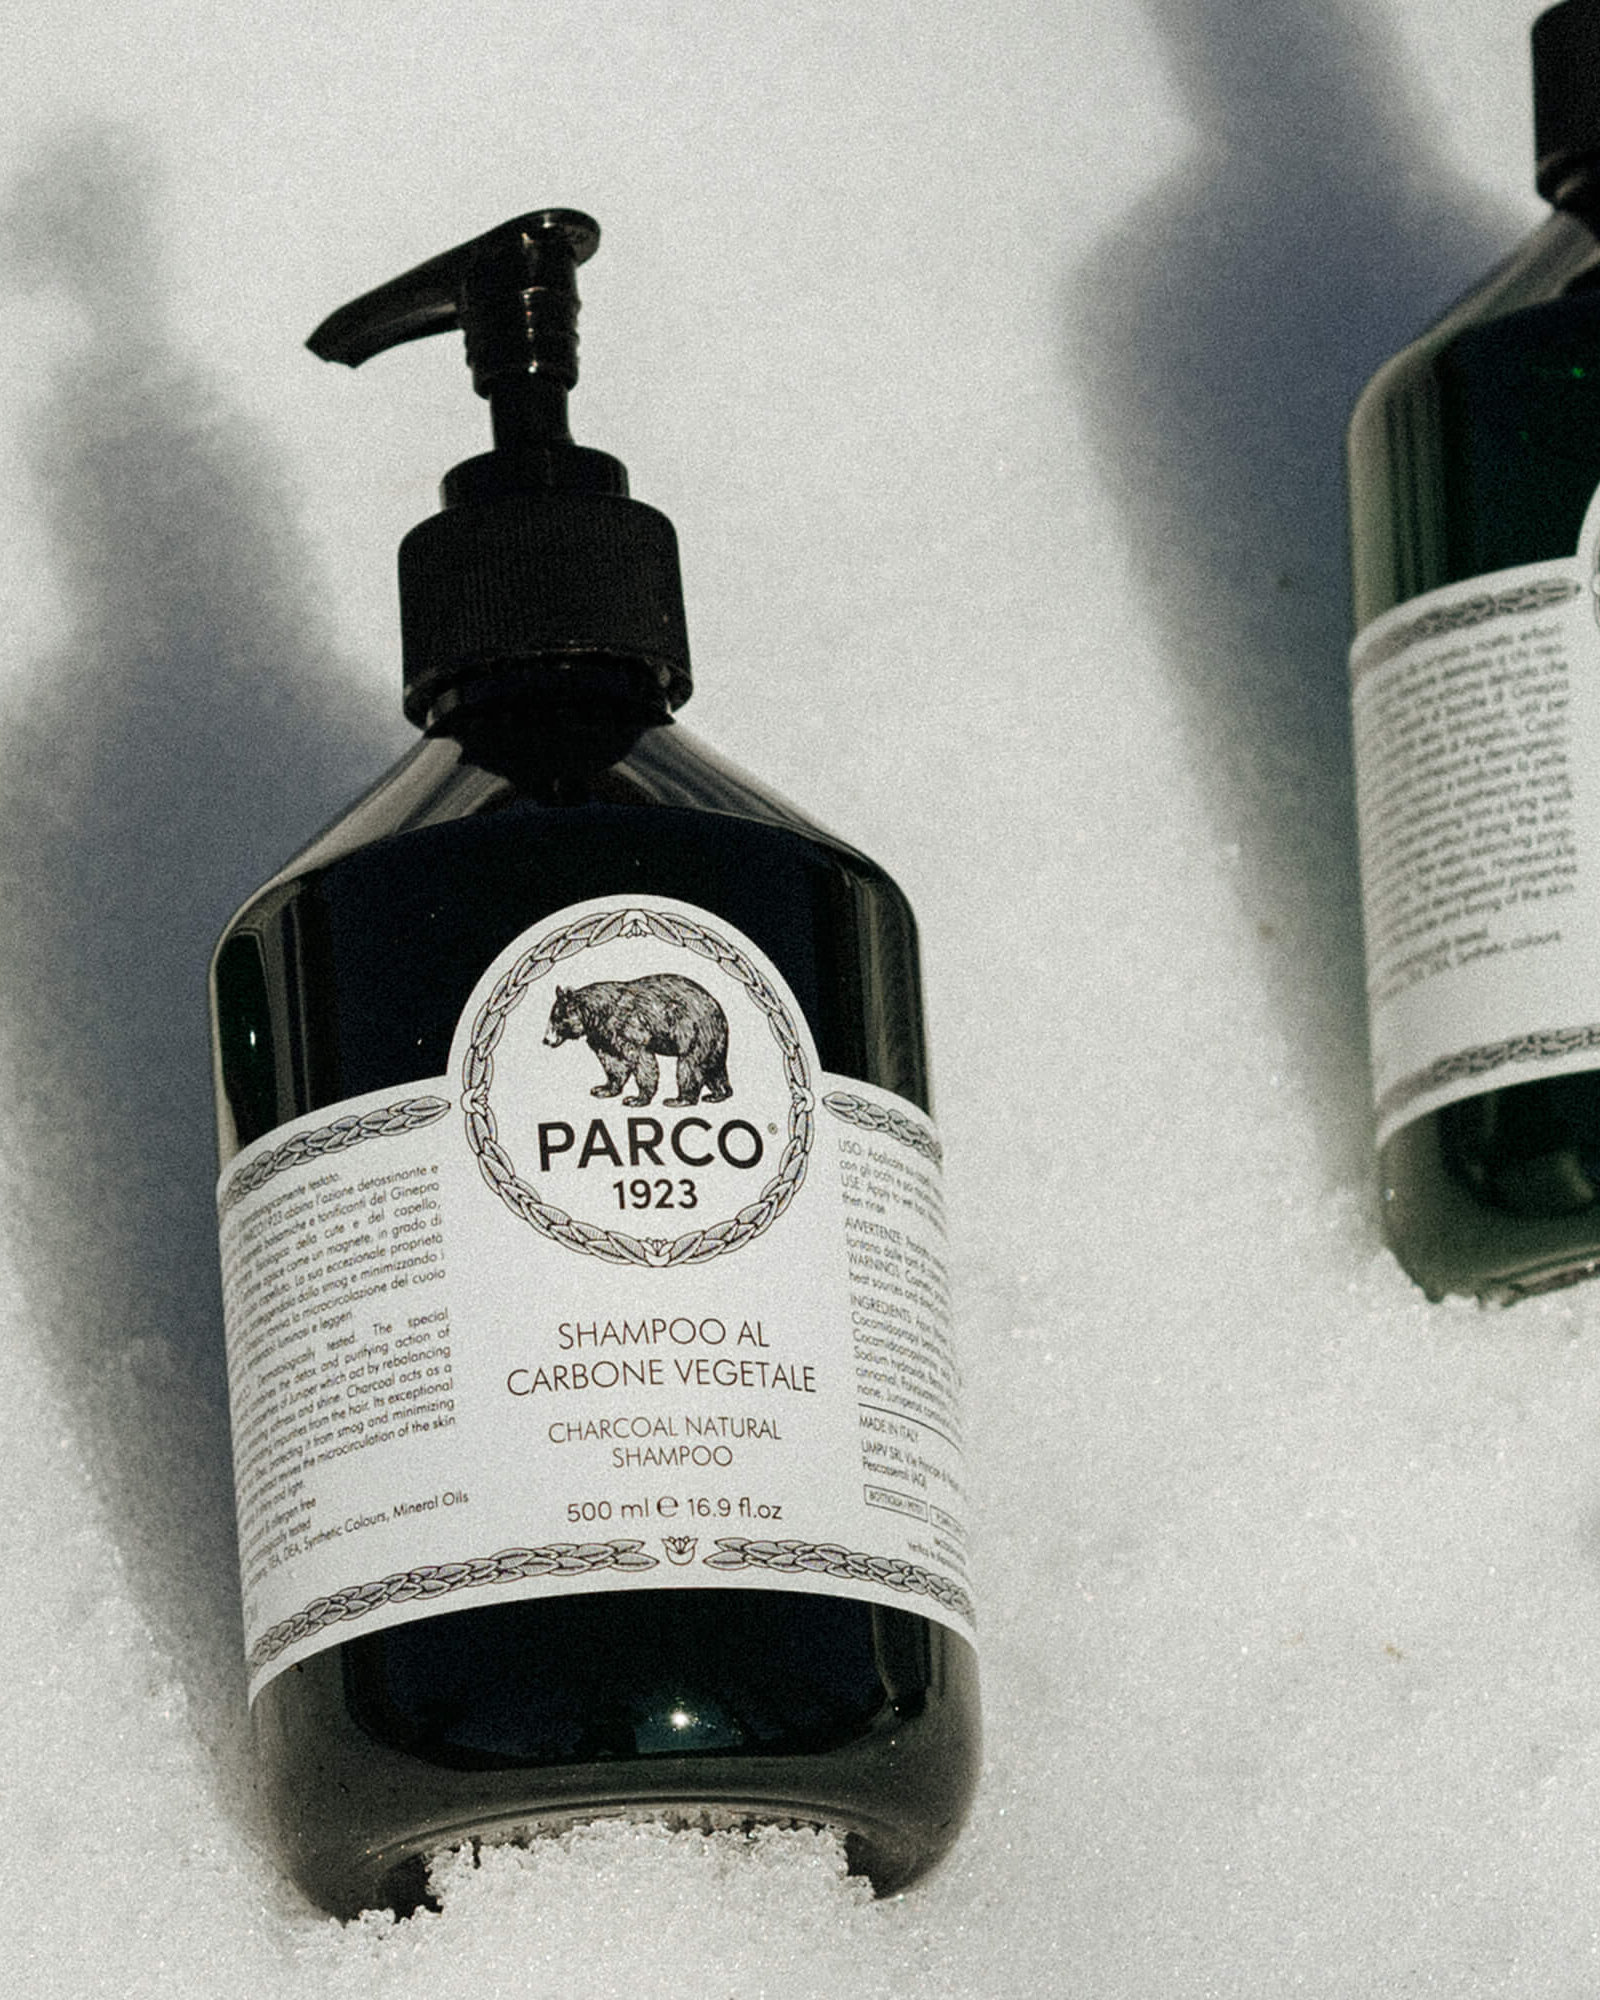 Parco 1923 - Shampoo PARCO 1923 CLASSIC - 500ml - pars_ham